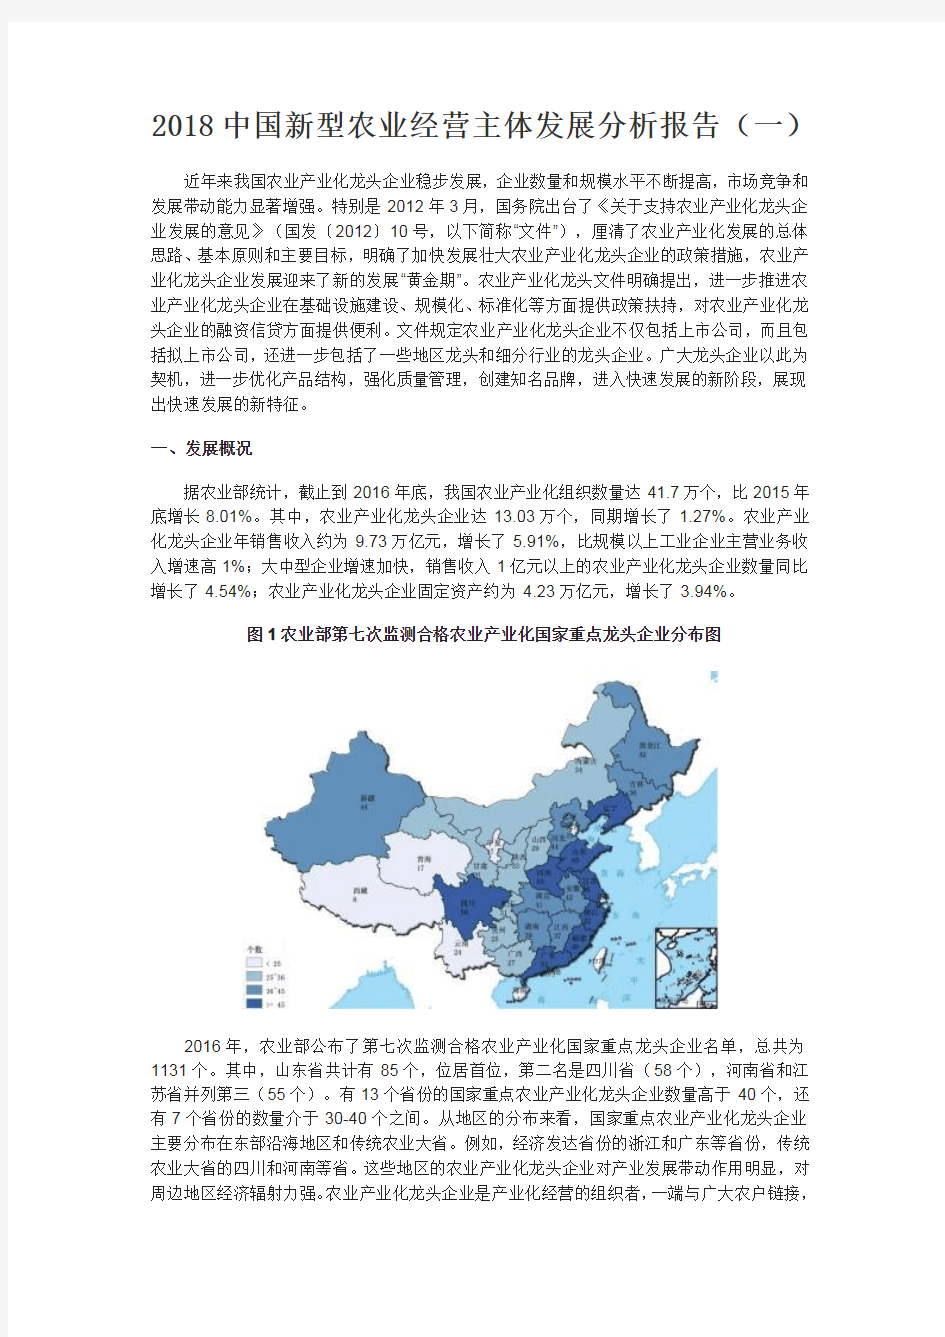 2018中国新型农业经营主体发展分析报告(一)